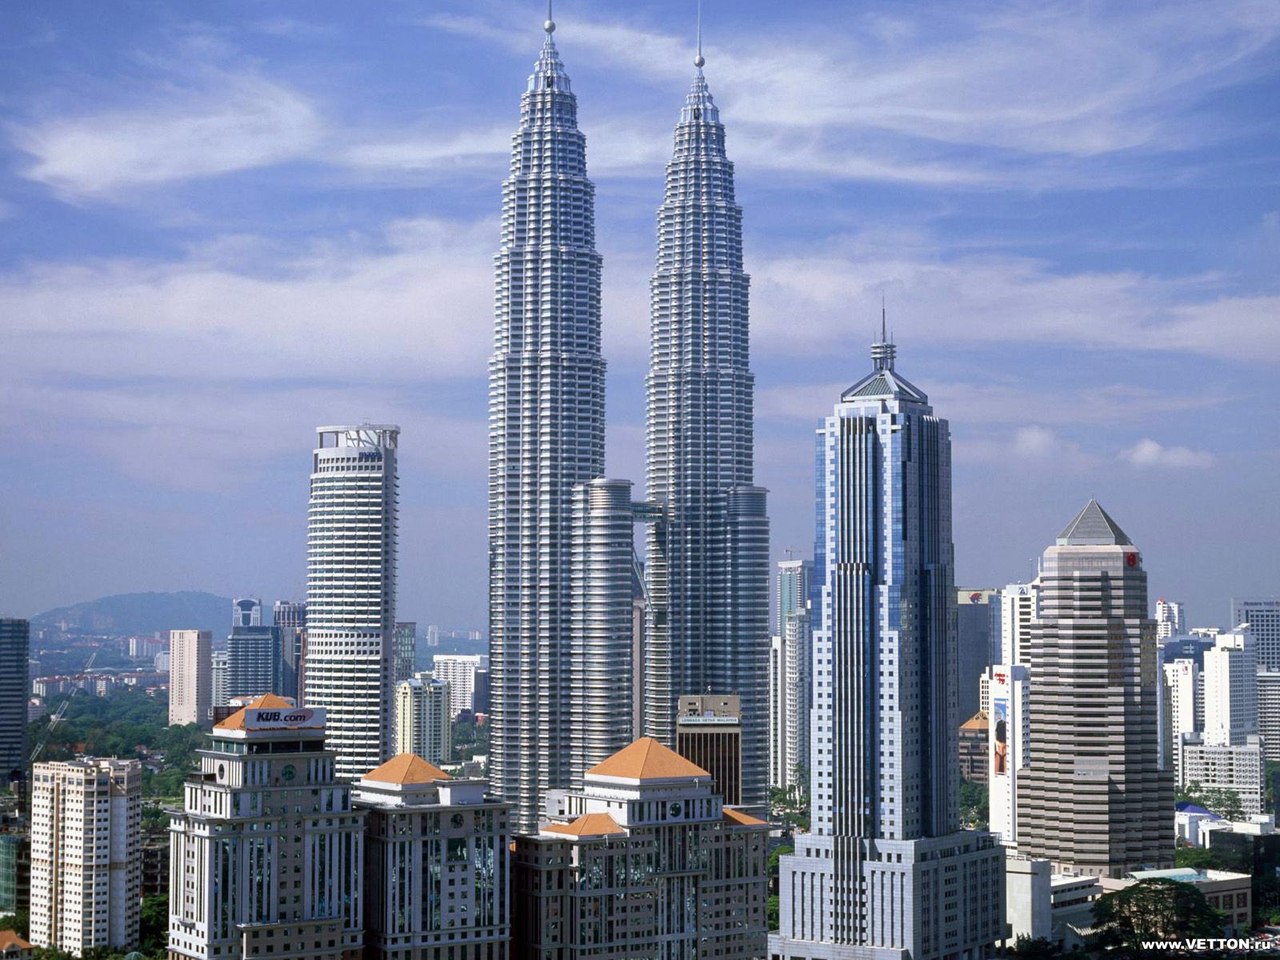 Kuala Lumpur - the capital of Malaysia